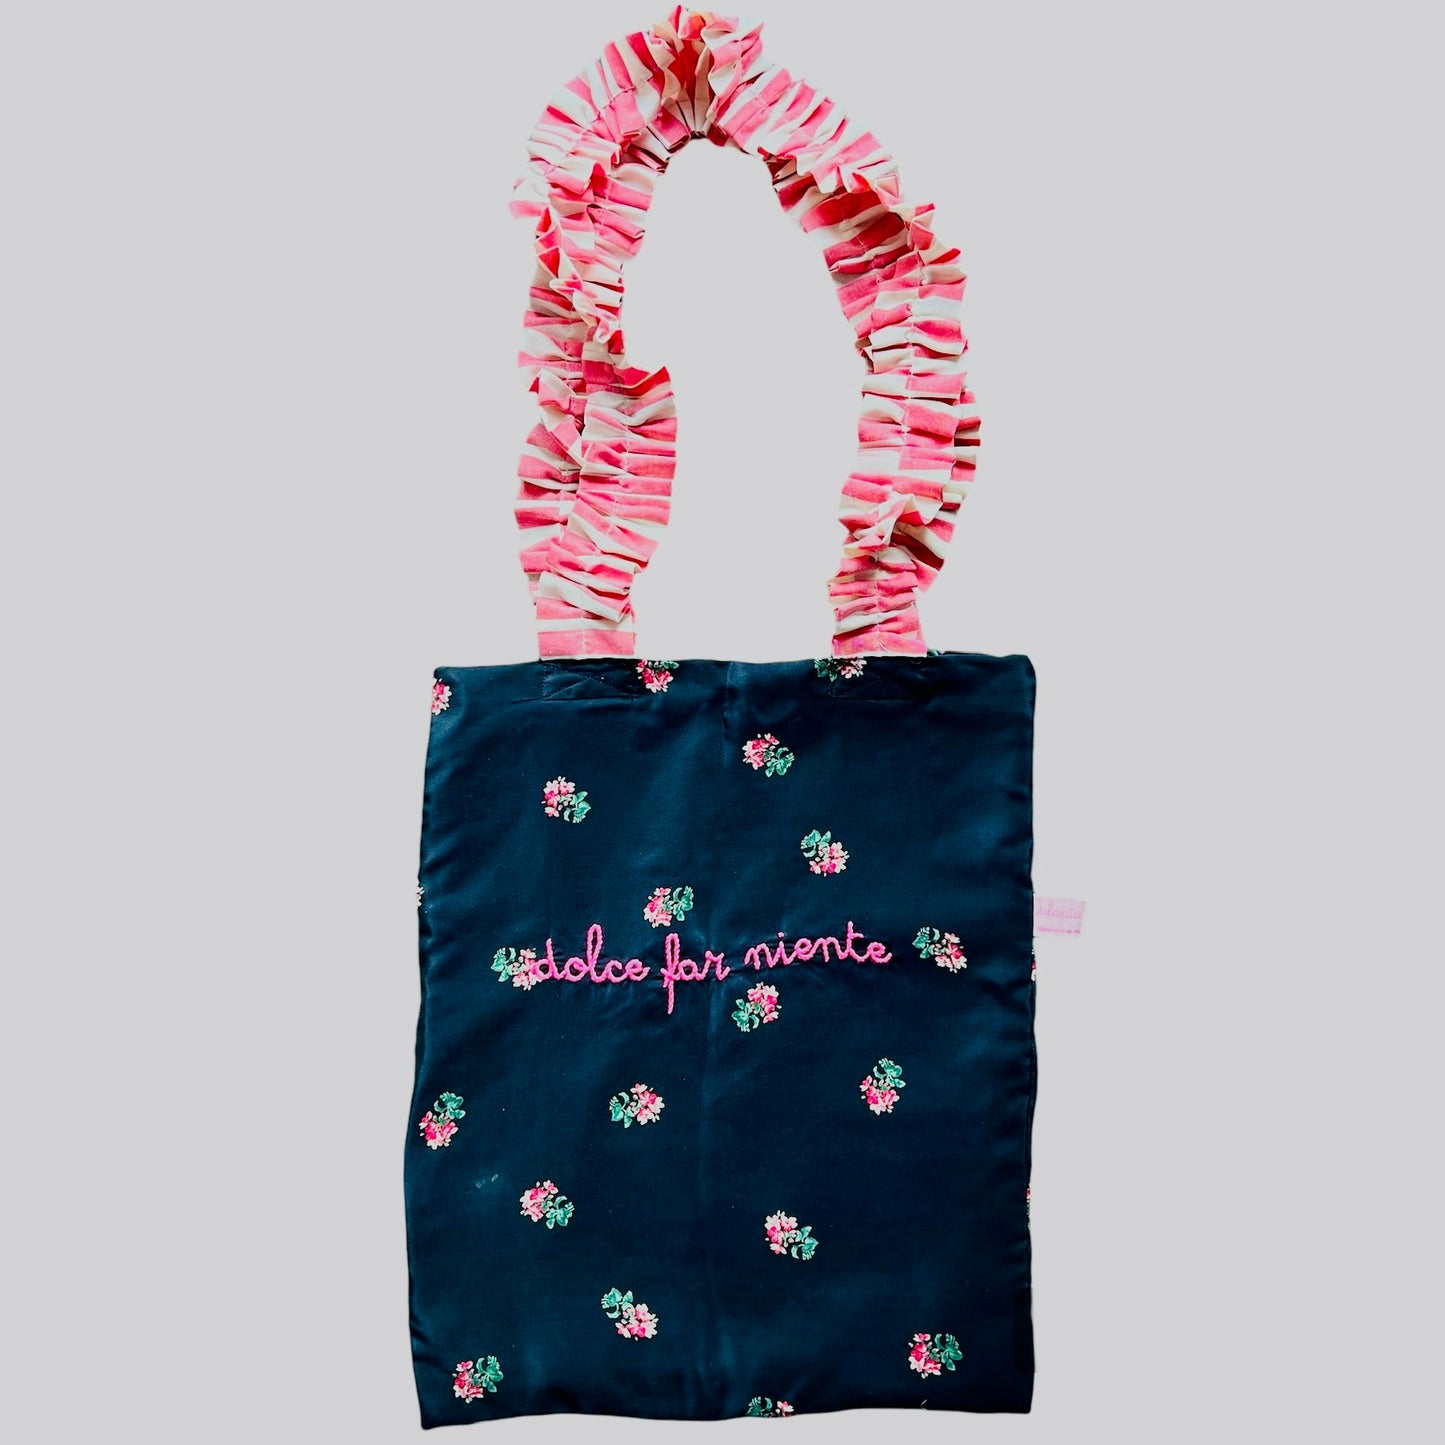 shopping bag "dolce far niente" in seta ricamata a mano con manici volants